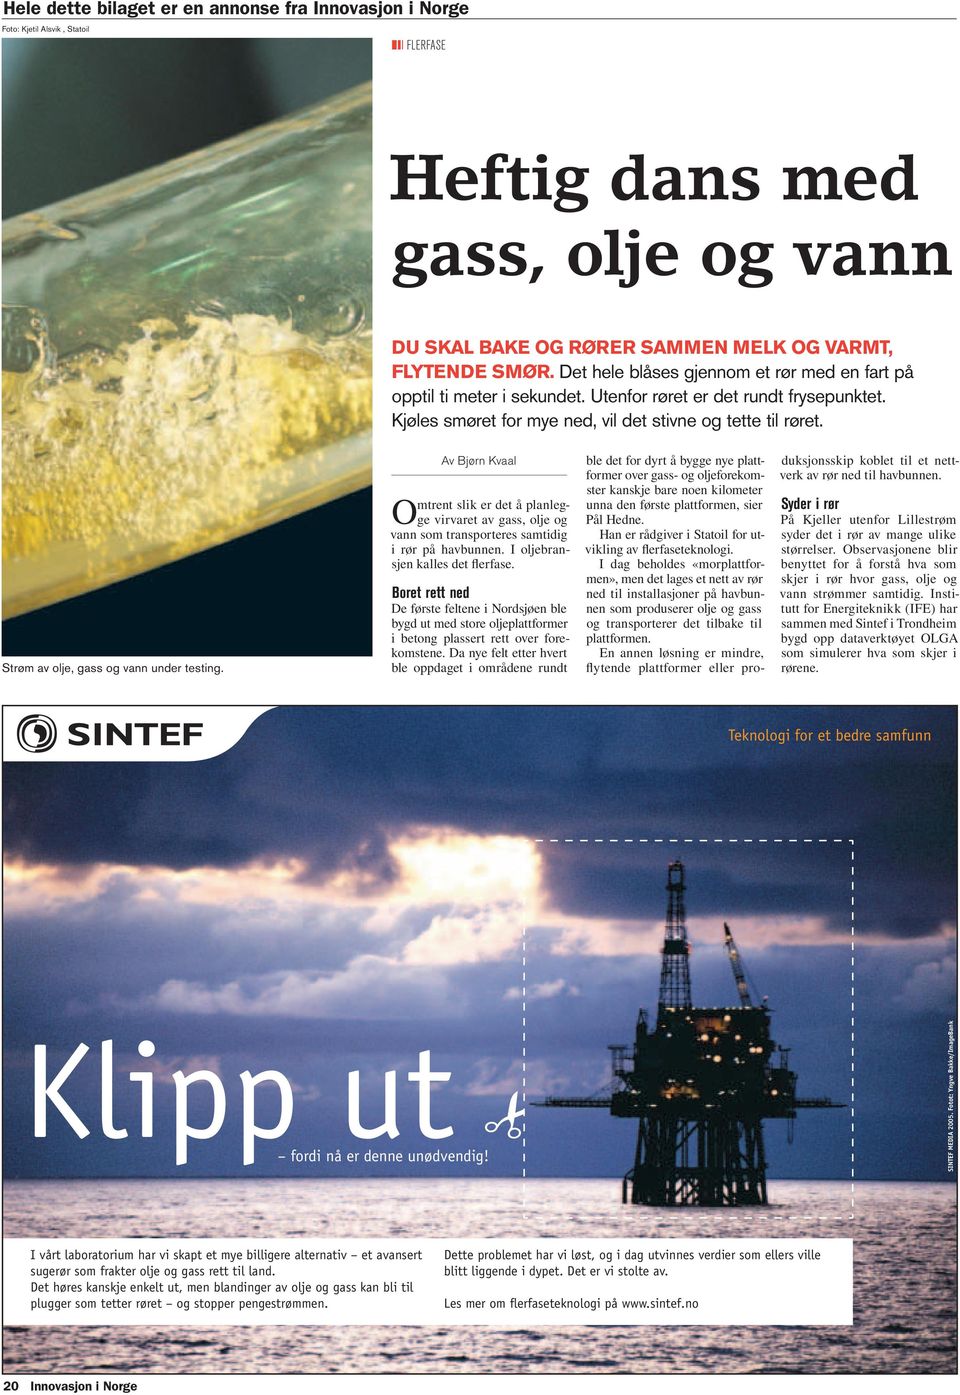 Strøm av olje, gass og vann under testing. Av Bjørn Kvaal Omtrent slik er det å planlegge virvaret av gass, olje og vann som transporteres samtidig i rør på havbunnen.